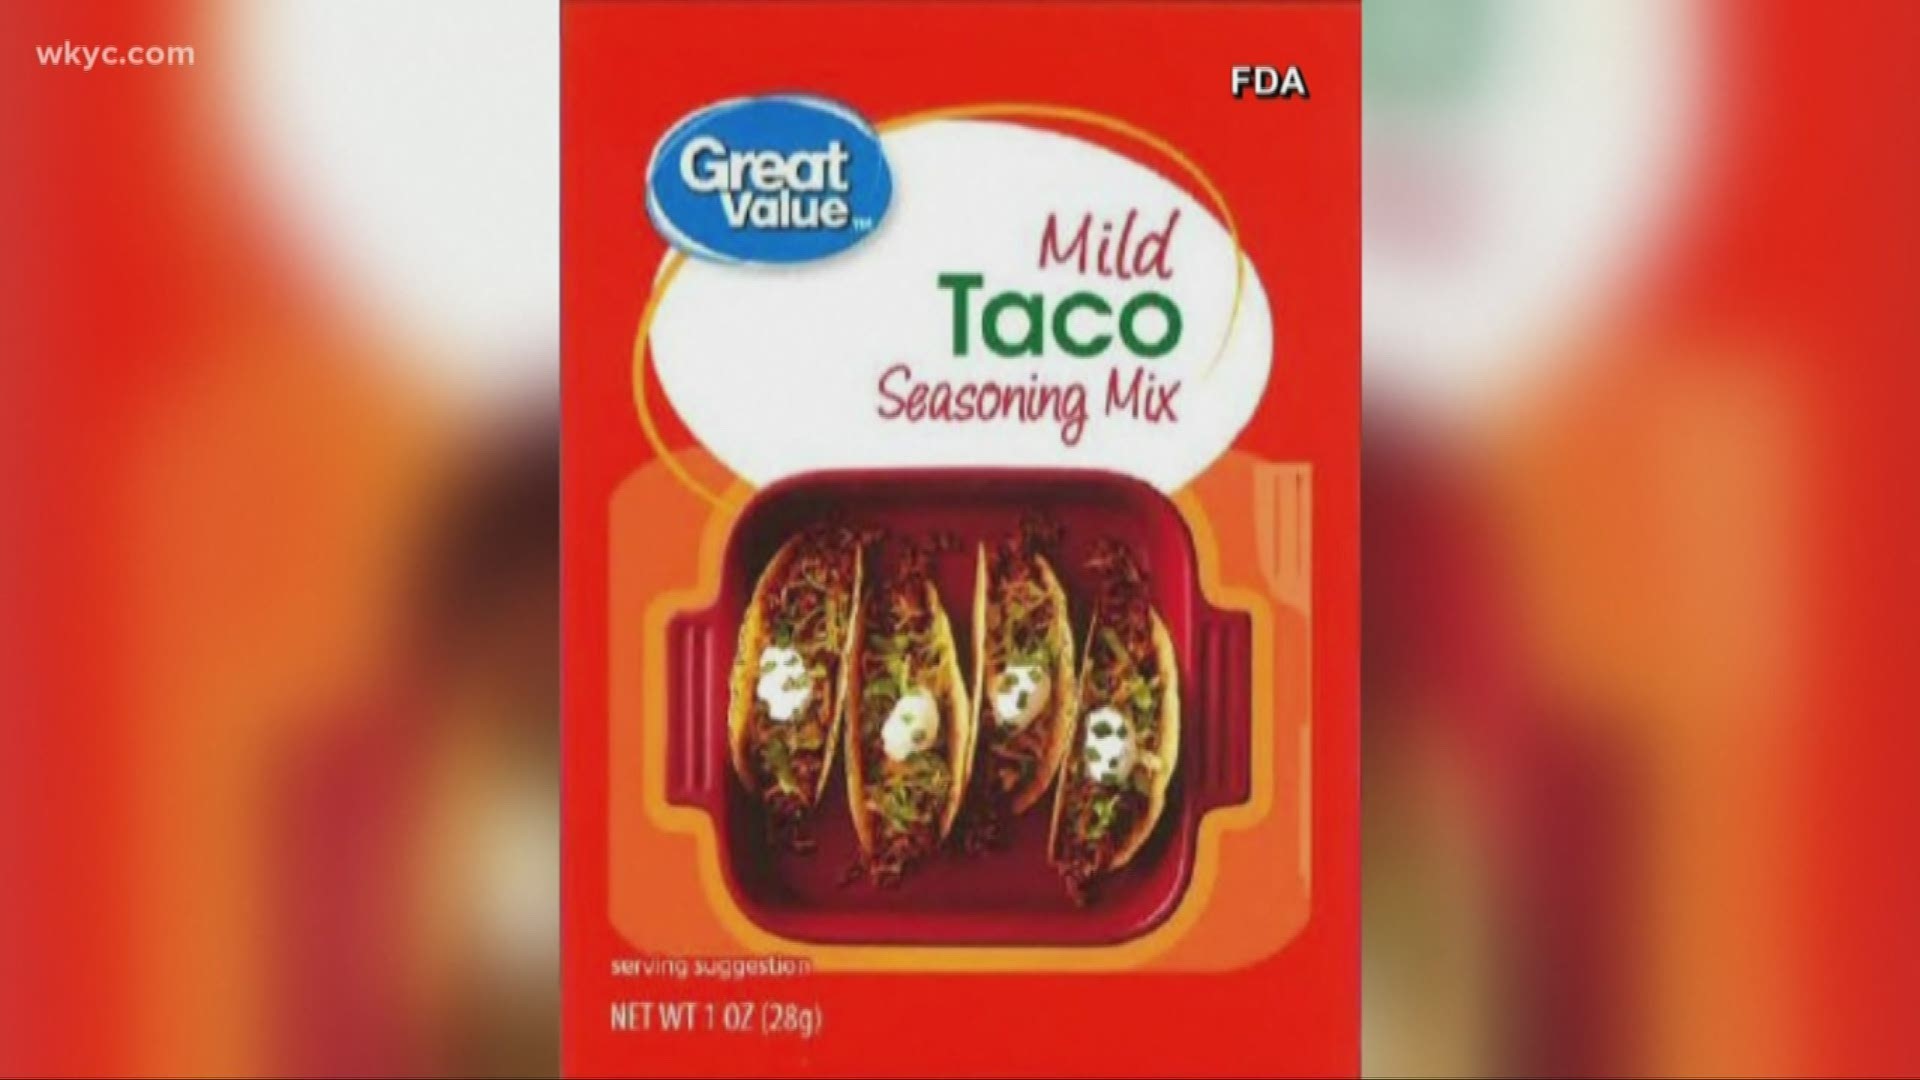 Taco Seasoning recalled at Walmart